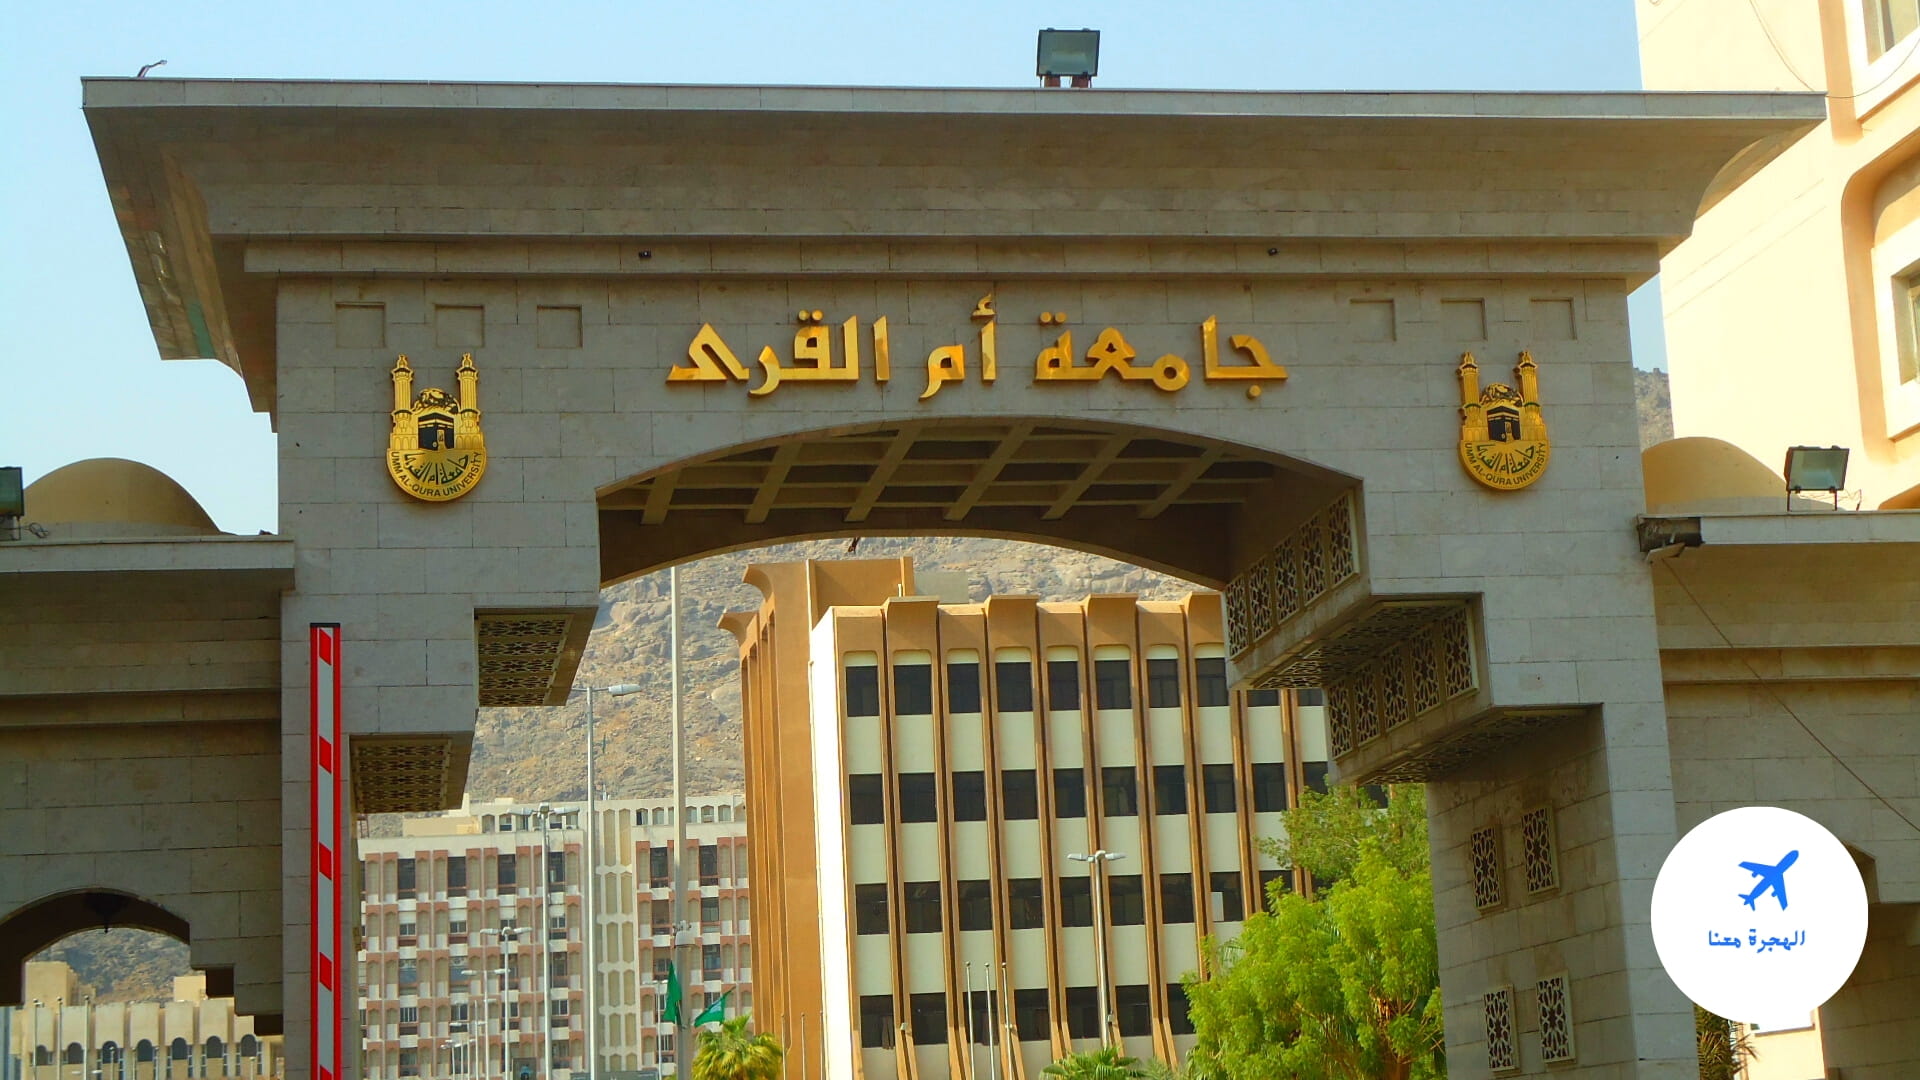 أول من أنشأ جامعة في المملكة العربية السعودية هو